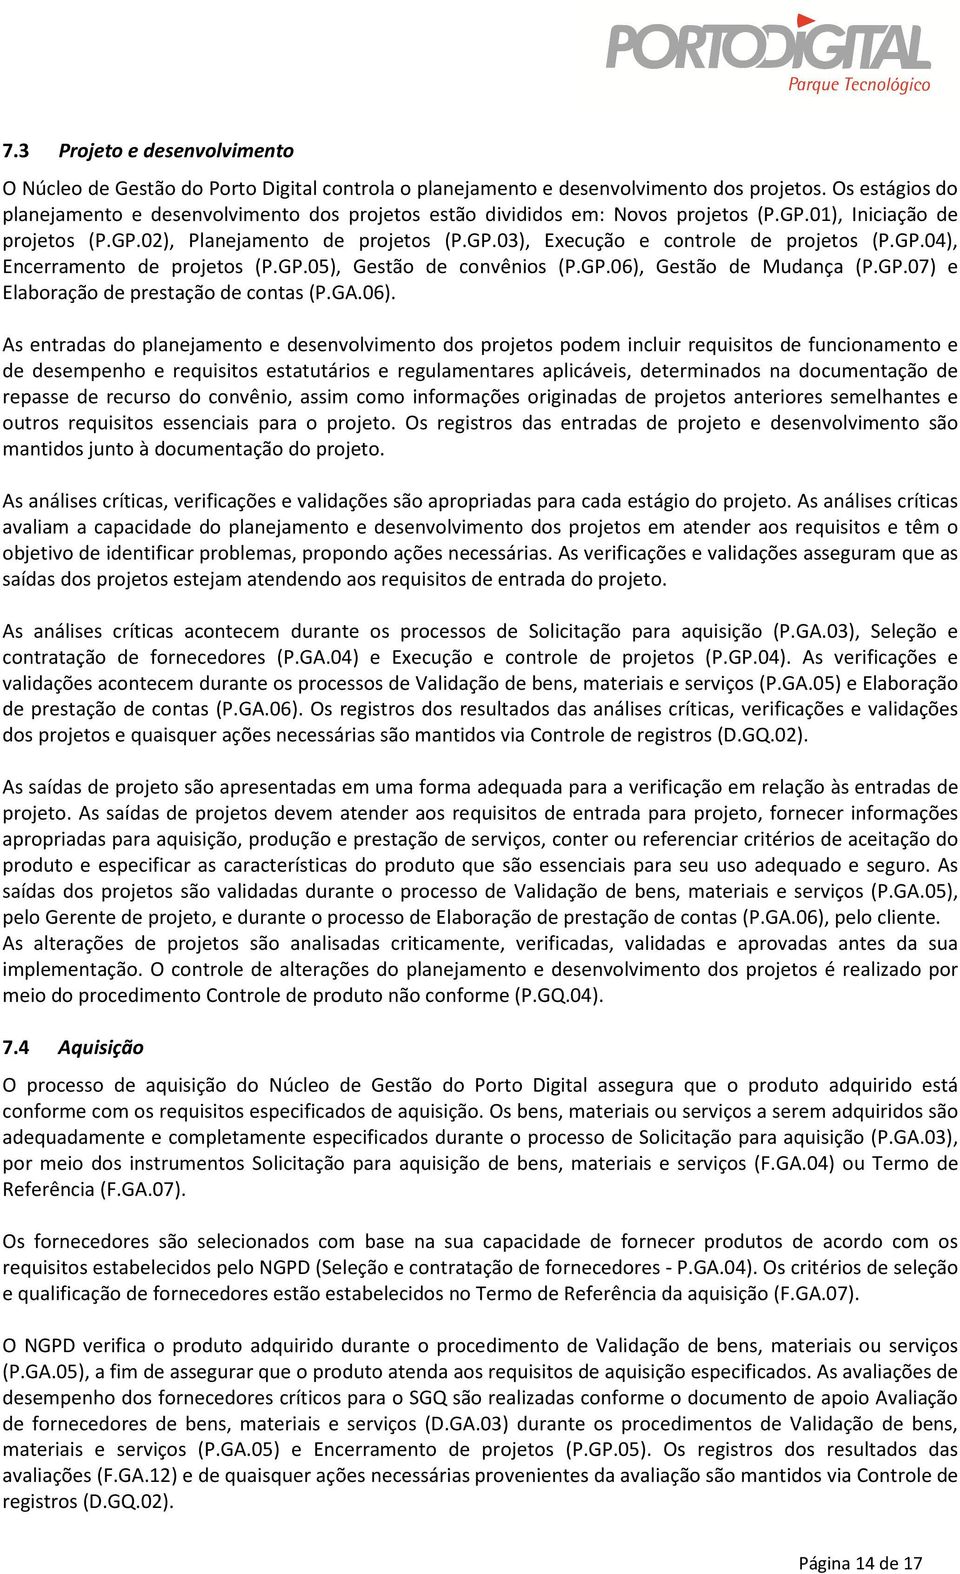 GP.04), Encerramento de projetos (P.GP.05), Gestão de convênios (P.GP.06),